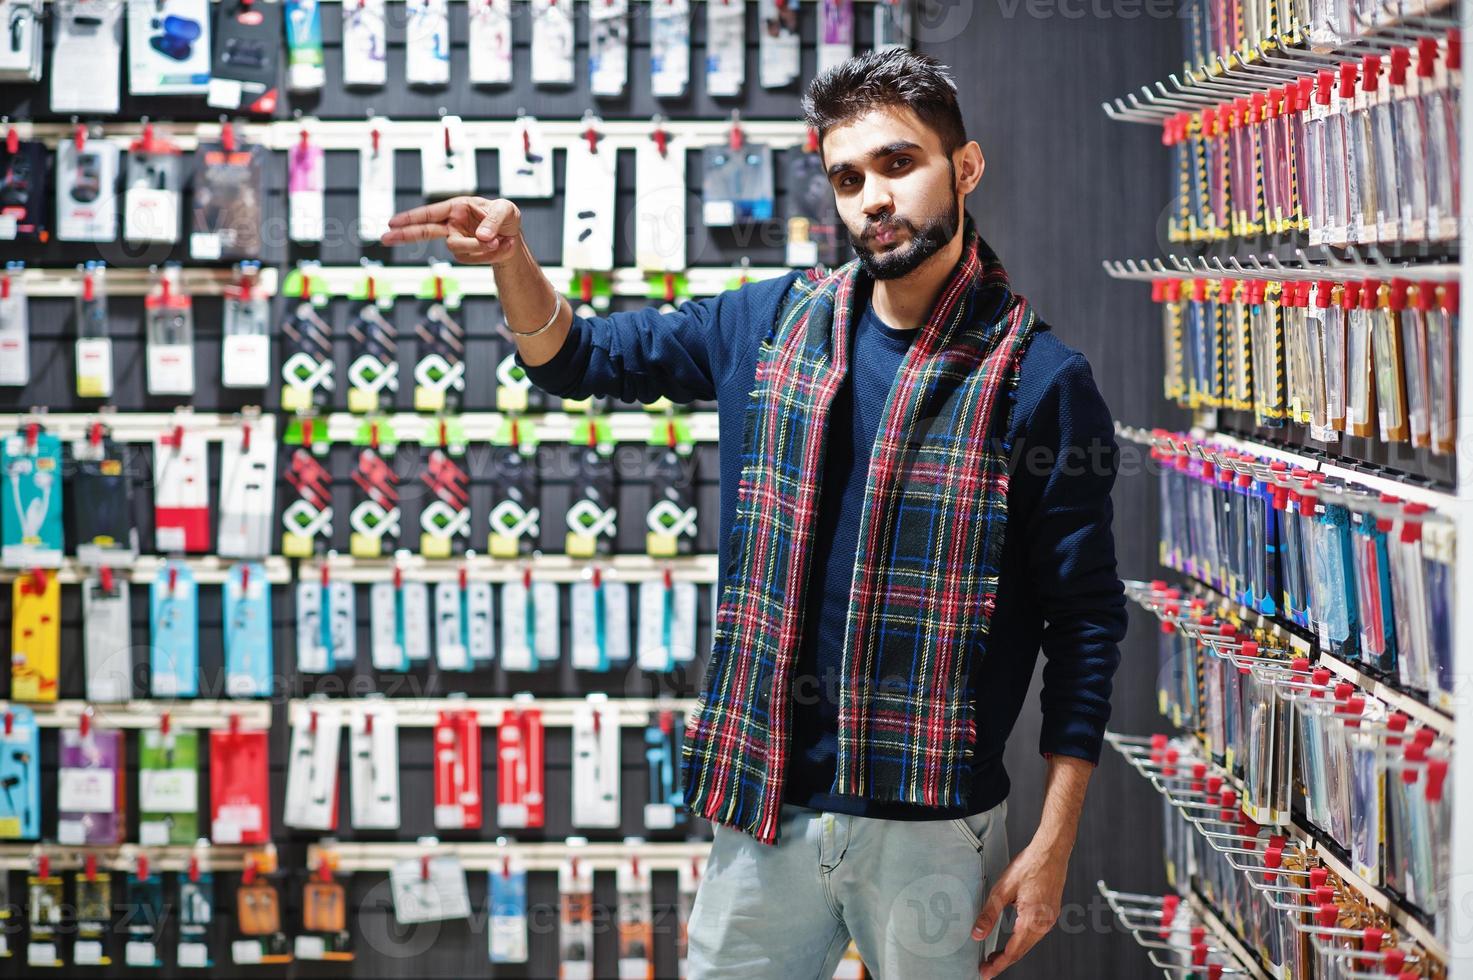 indiase man klant koper bij mobiele telefoon winkel kiest een hoesje voor zijn smartphone. Zuid-Aziatische volkeren en technologieën concept. gsm winkel. foto